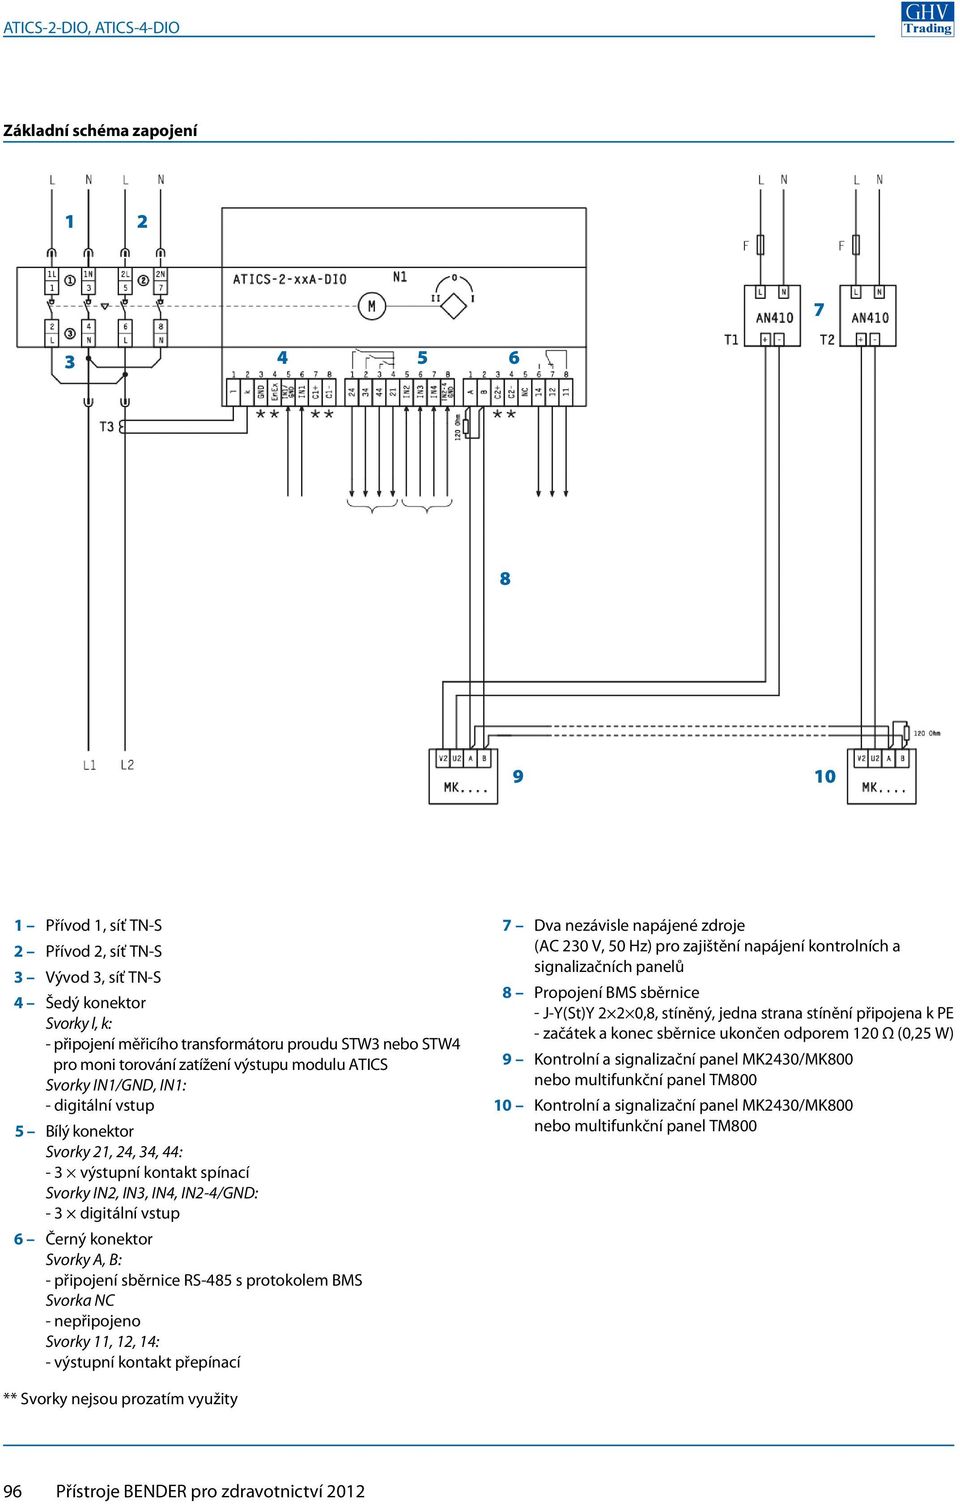 Černý konektor Svorky A, B: - připojení sběrnice RS-485 s protokolem BMS Svorka NC - nepřipojeno Svorky, 2, 4: - výstupní kontakt přepínací Dva nezávisle napájené zdroje (AC 230 V, 50 Hz) pro